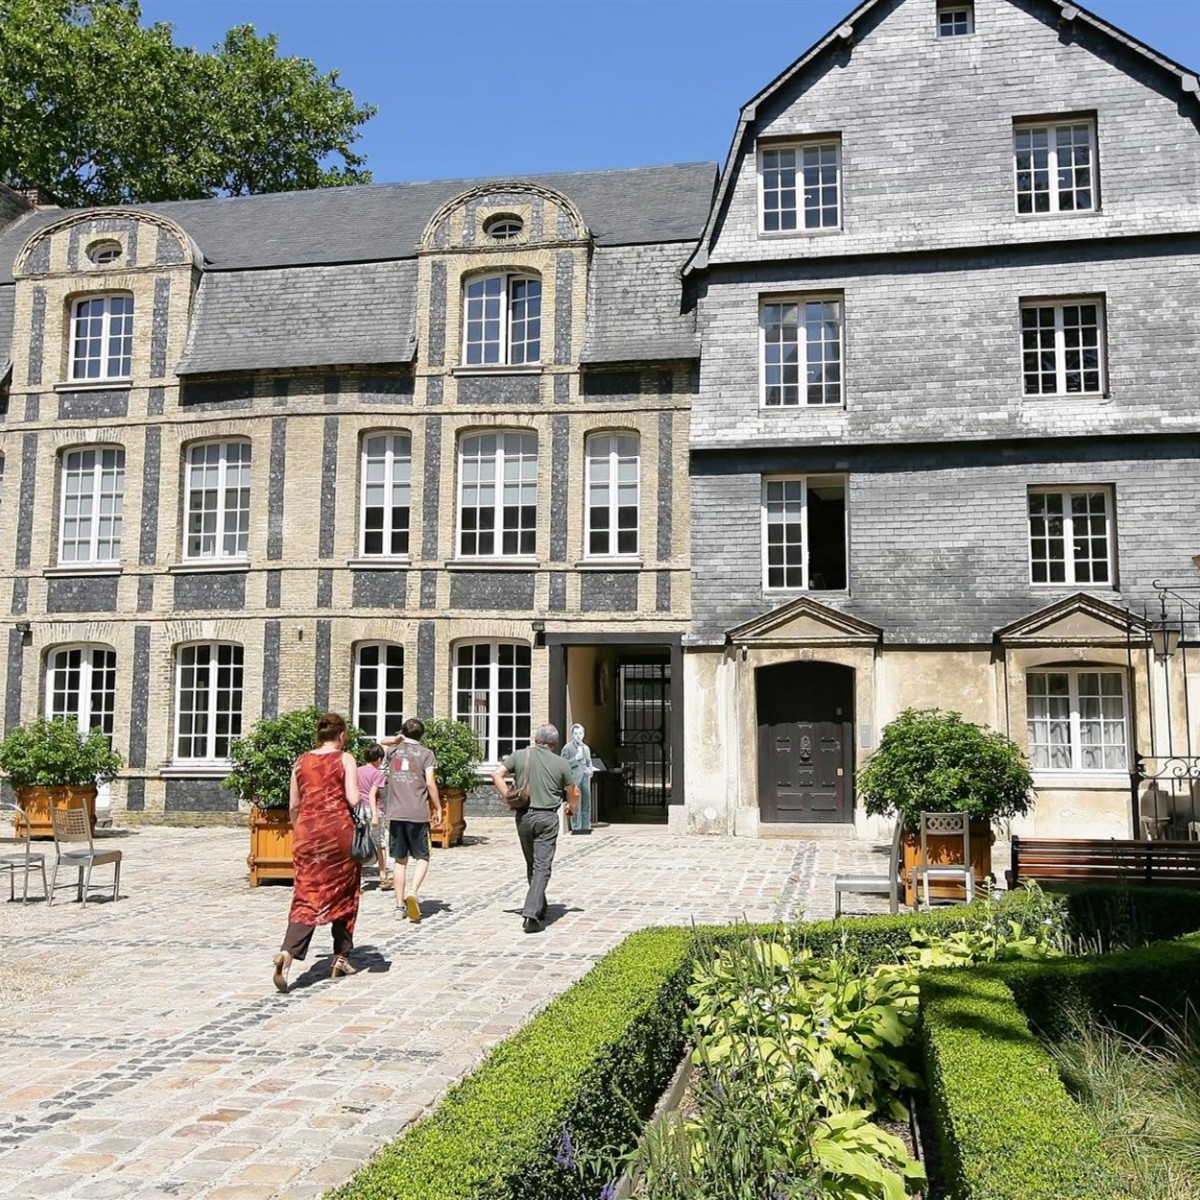 Hôtel Dubocage de Bléville